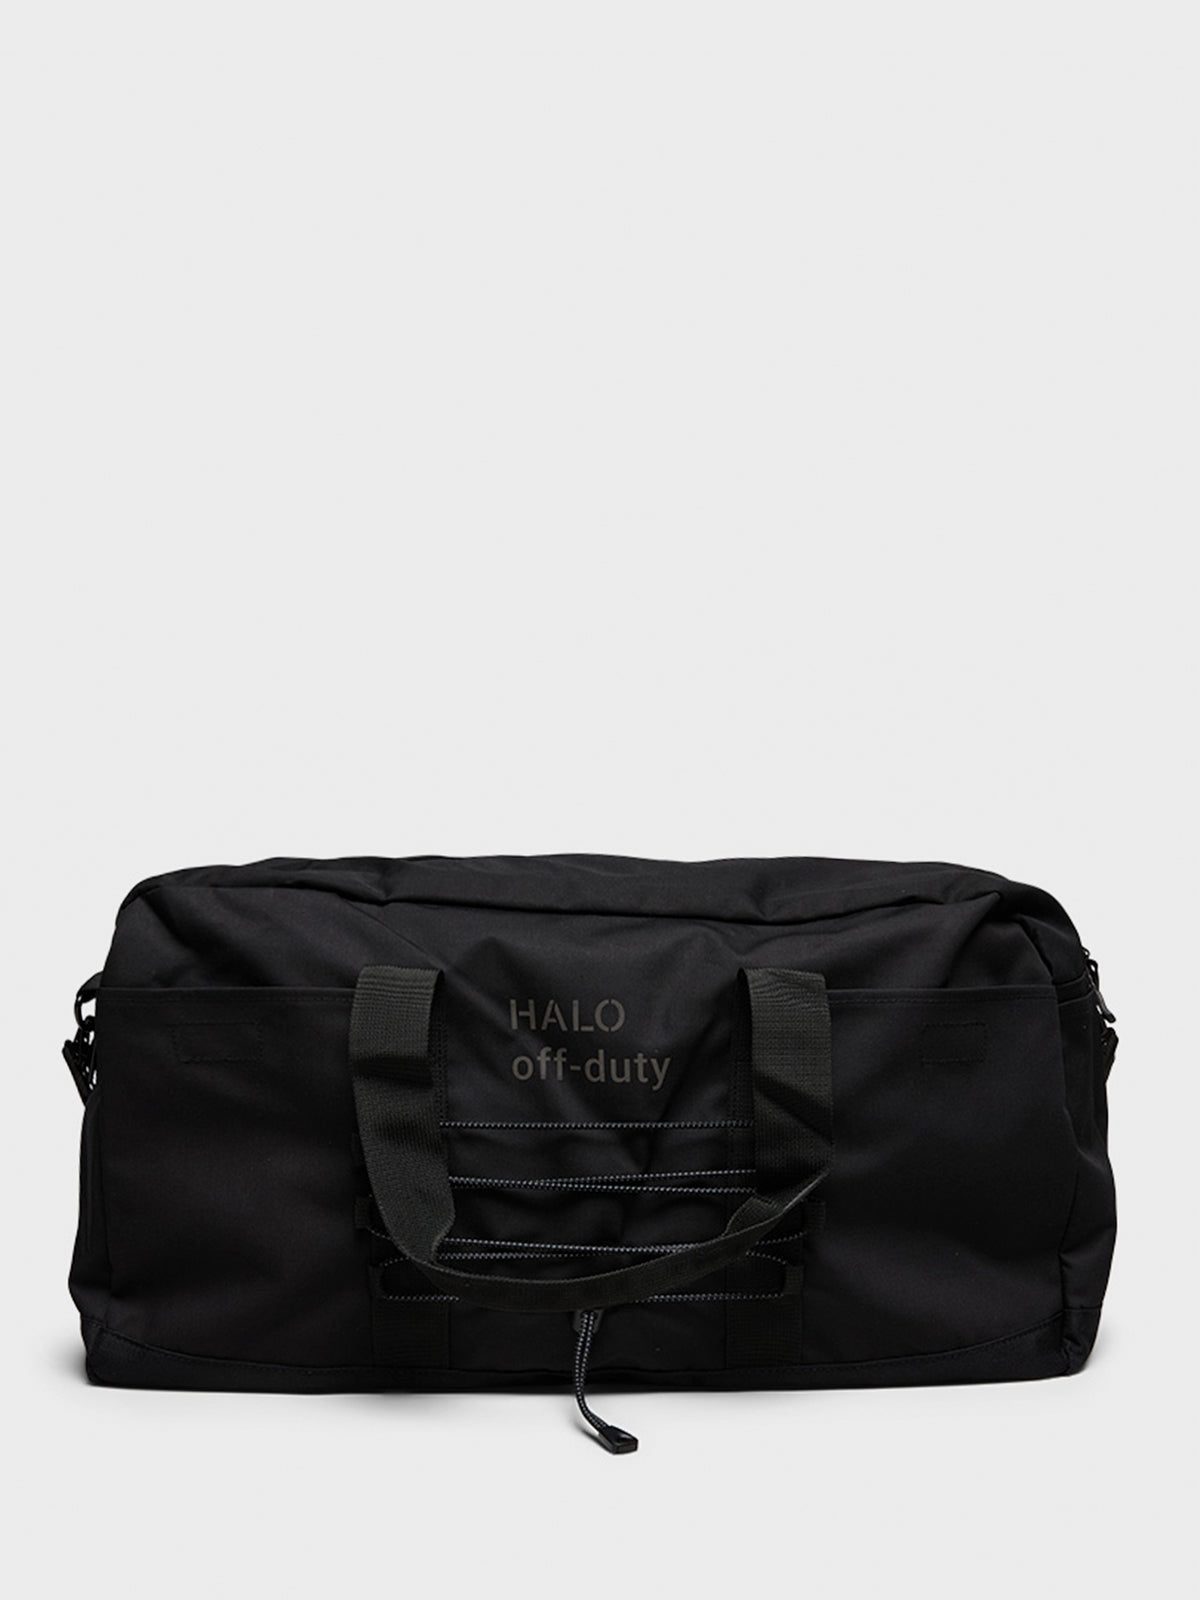 Dura Duffle Bag in Black